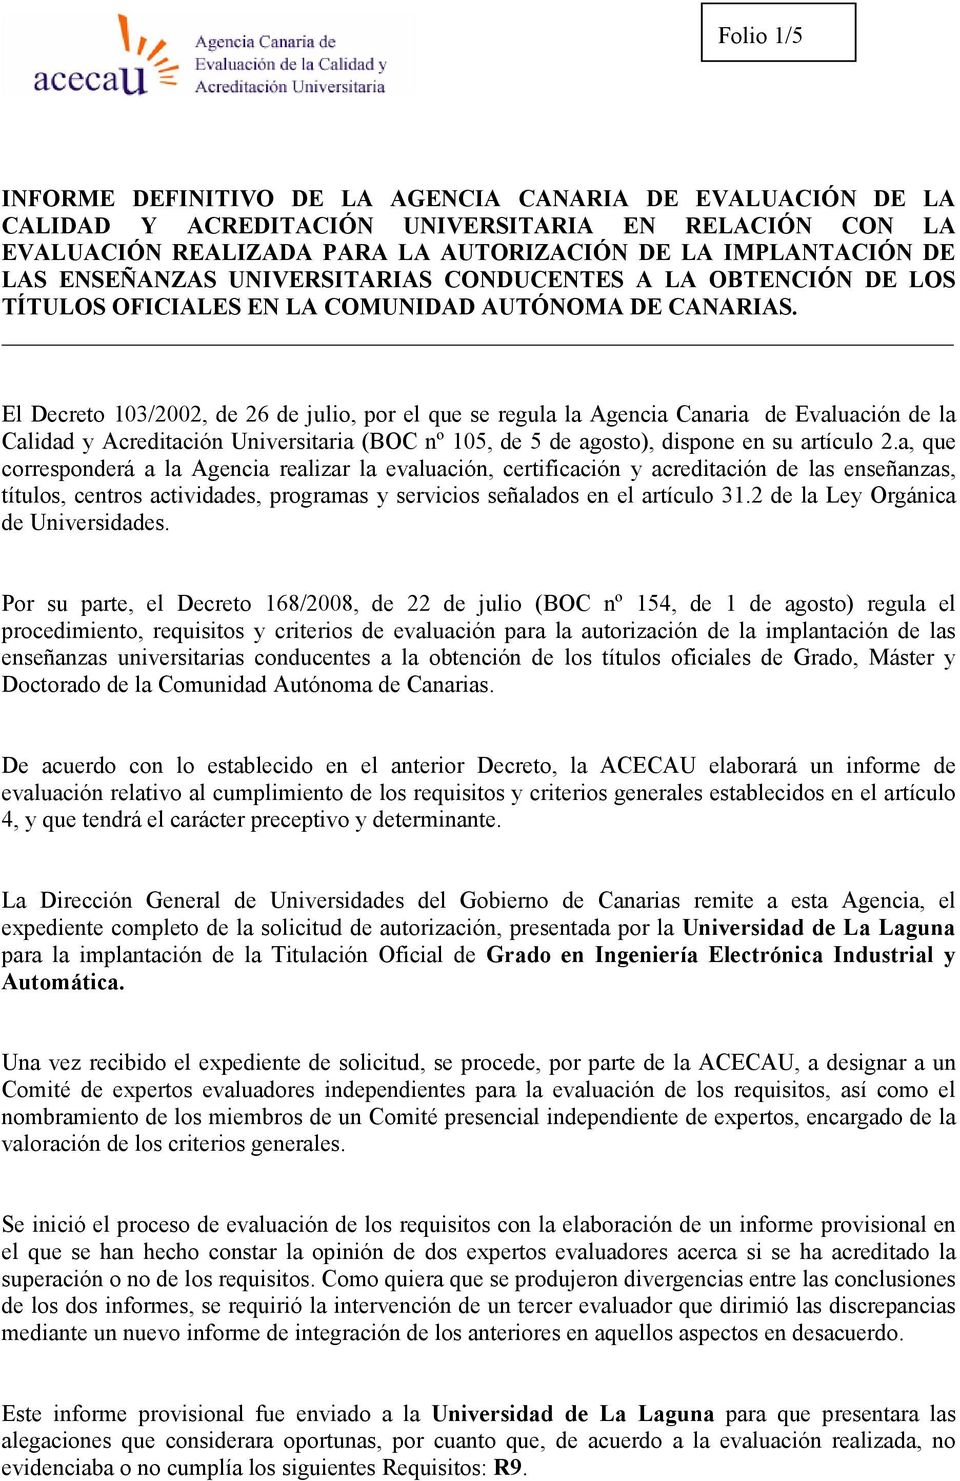 El Decreto 103/2002, de 26 de julio, por el que se regula la Agencia Canaria de Evaluación de la Calidad y Acreditación Universitaria (BOC nº 105, de 5 de agosto), dispone en su artículo 2.